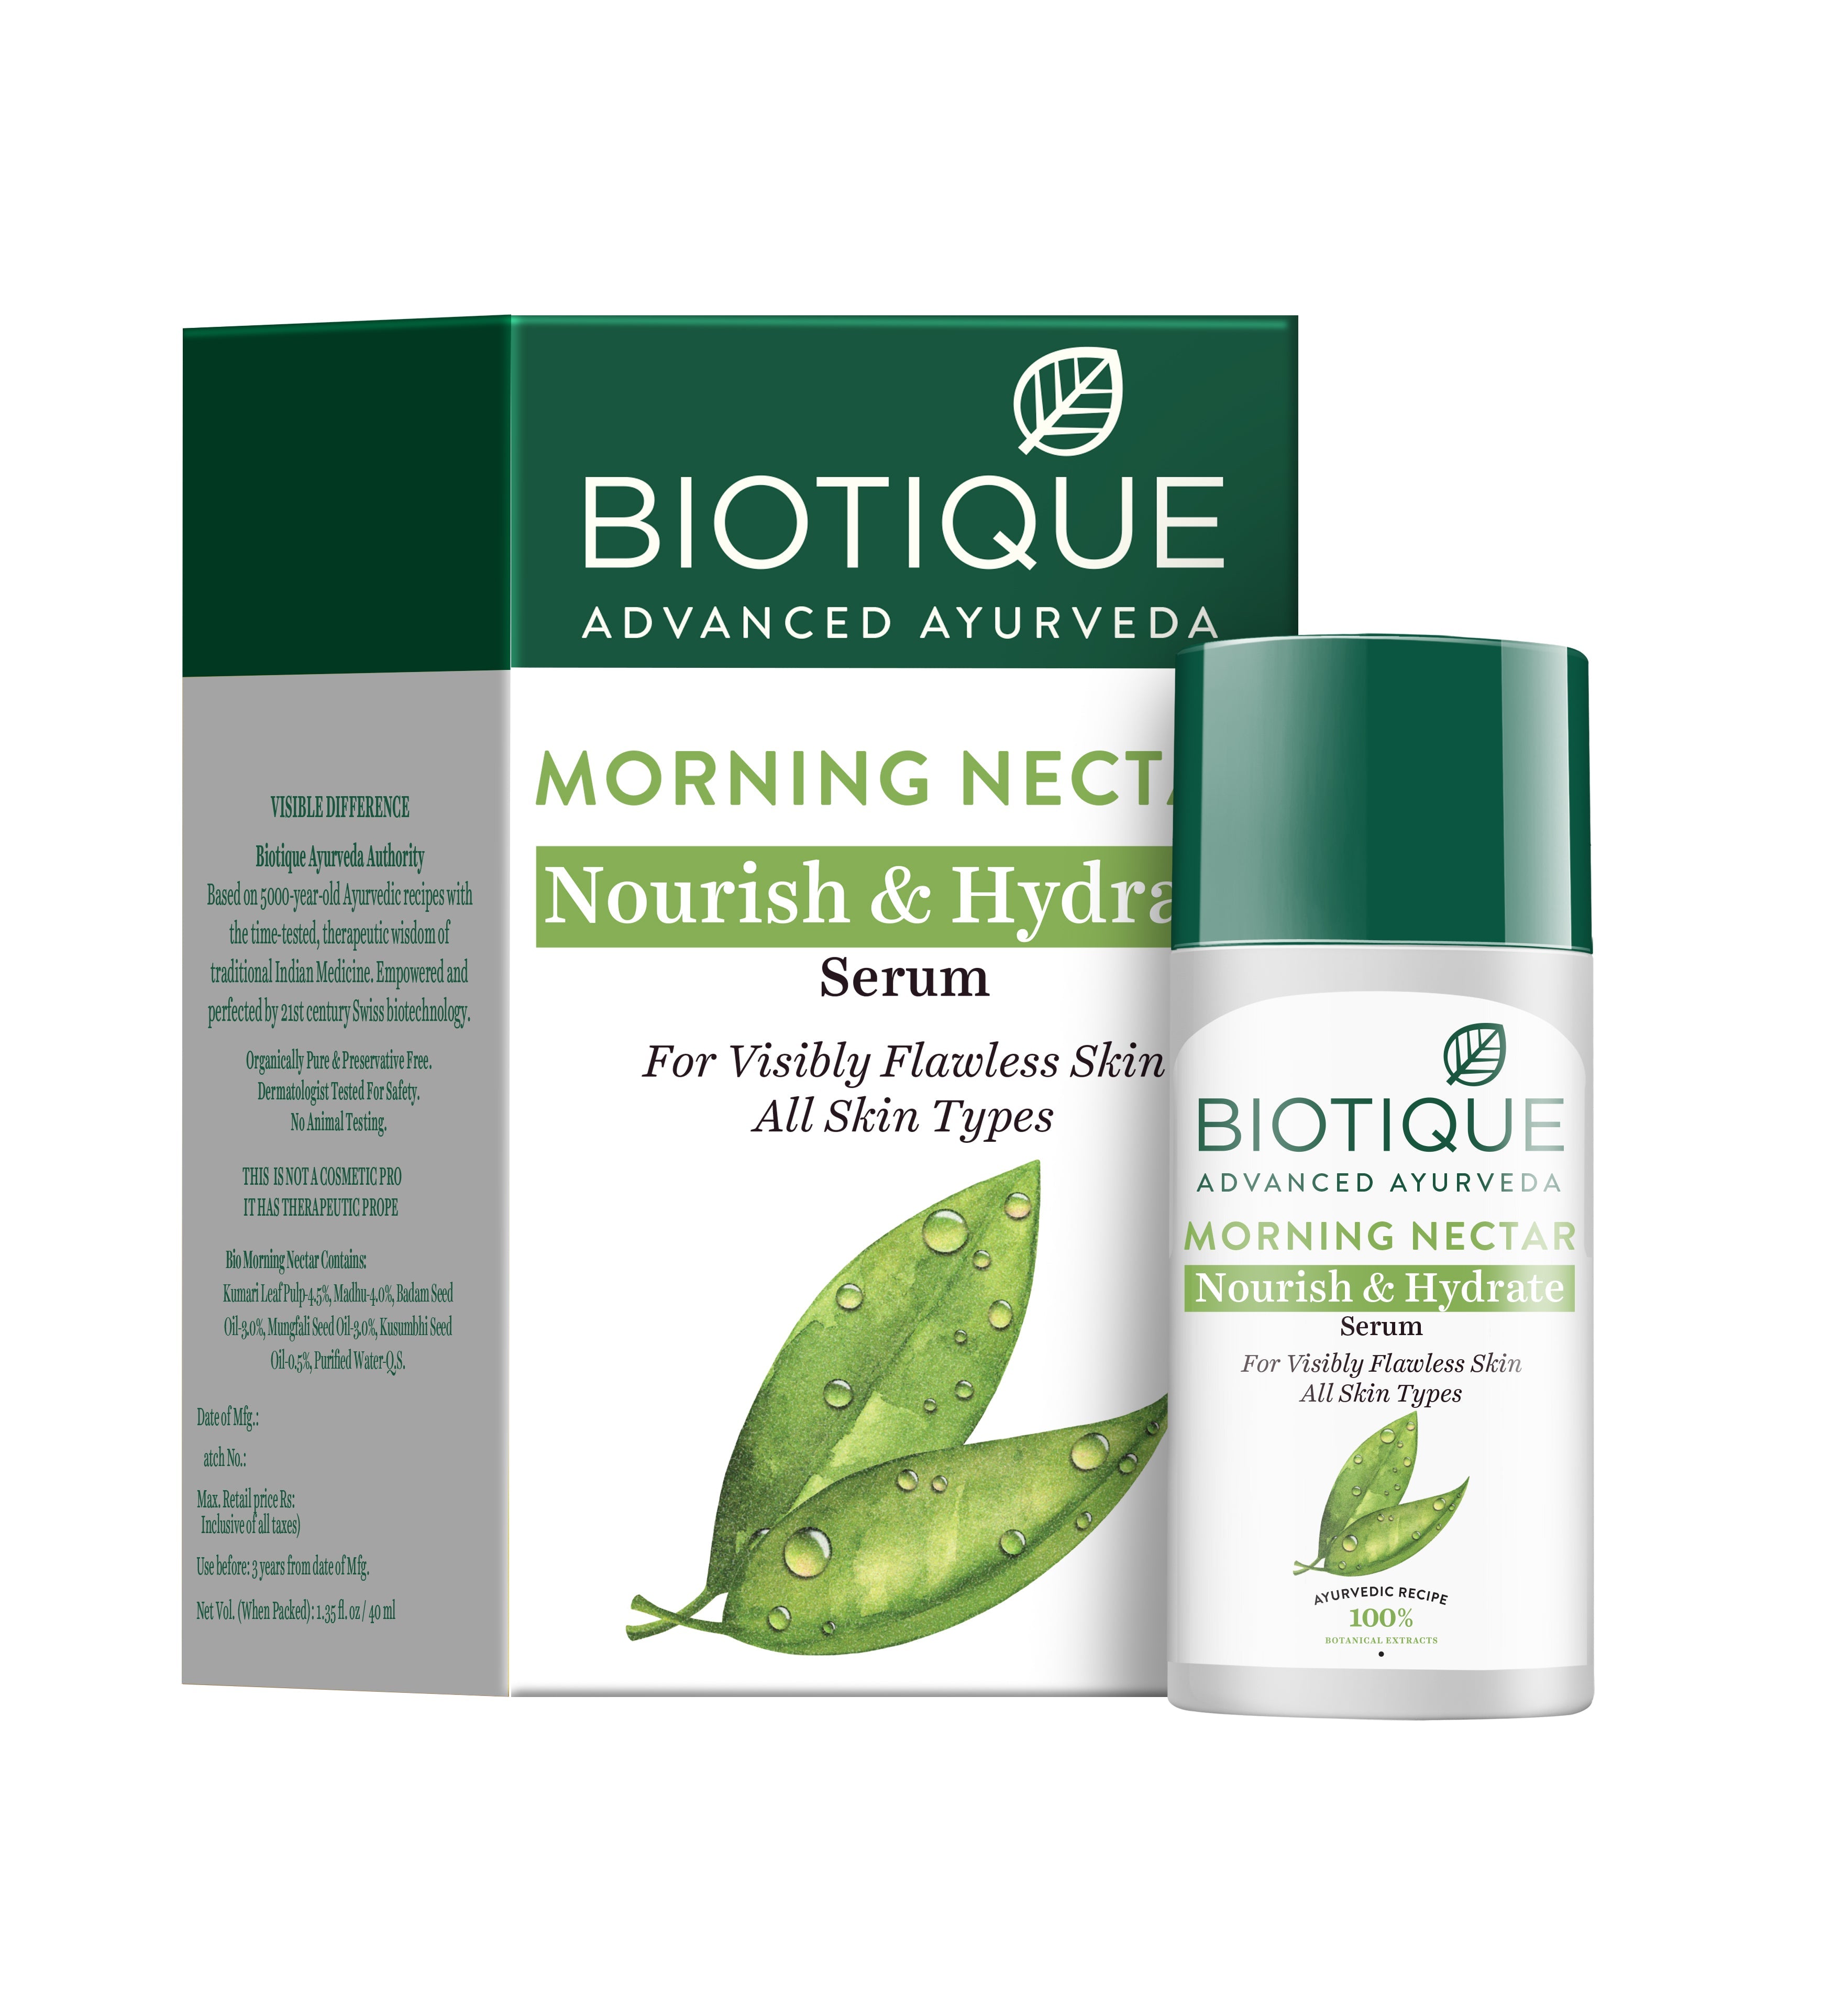 MORNING NECTAR Nourish & Hydrate Serum 40ml